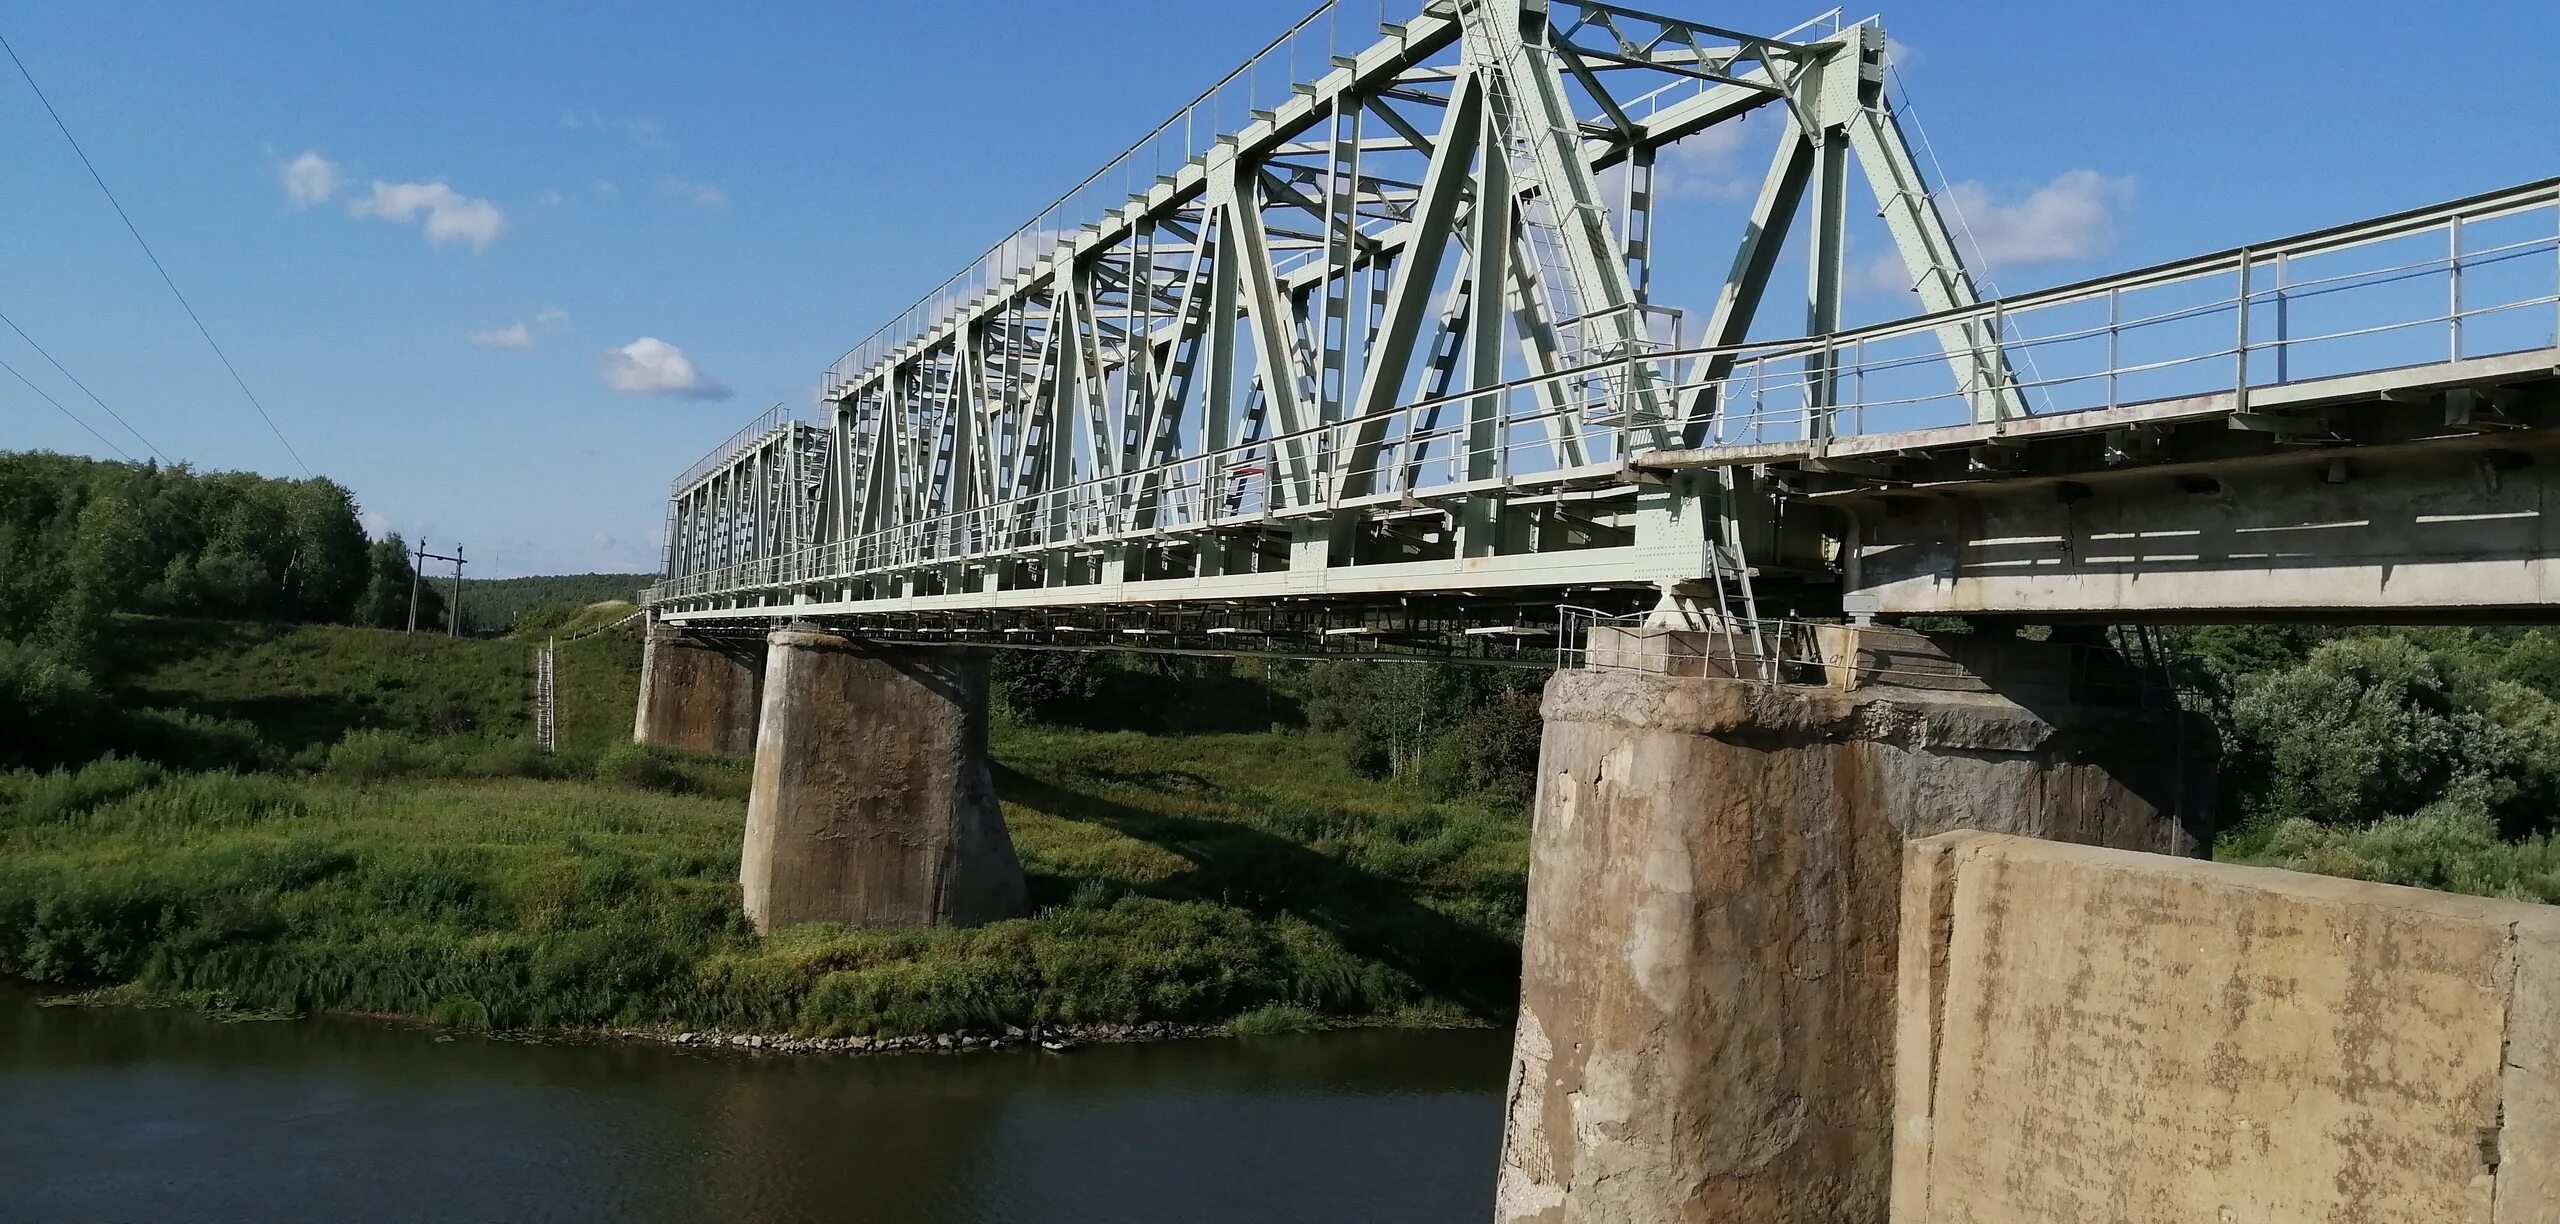 Река конка. Железнодорожный мост Перемышль. Железнодорожный мост Кириши. Железнодорожный мост Юрга. Железнодорожный мост Великие Луки.